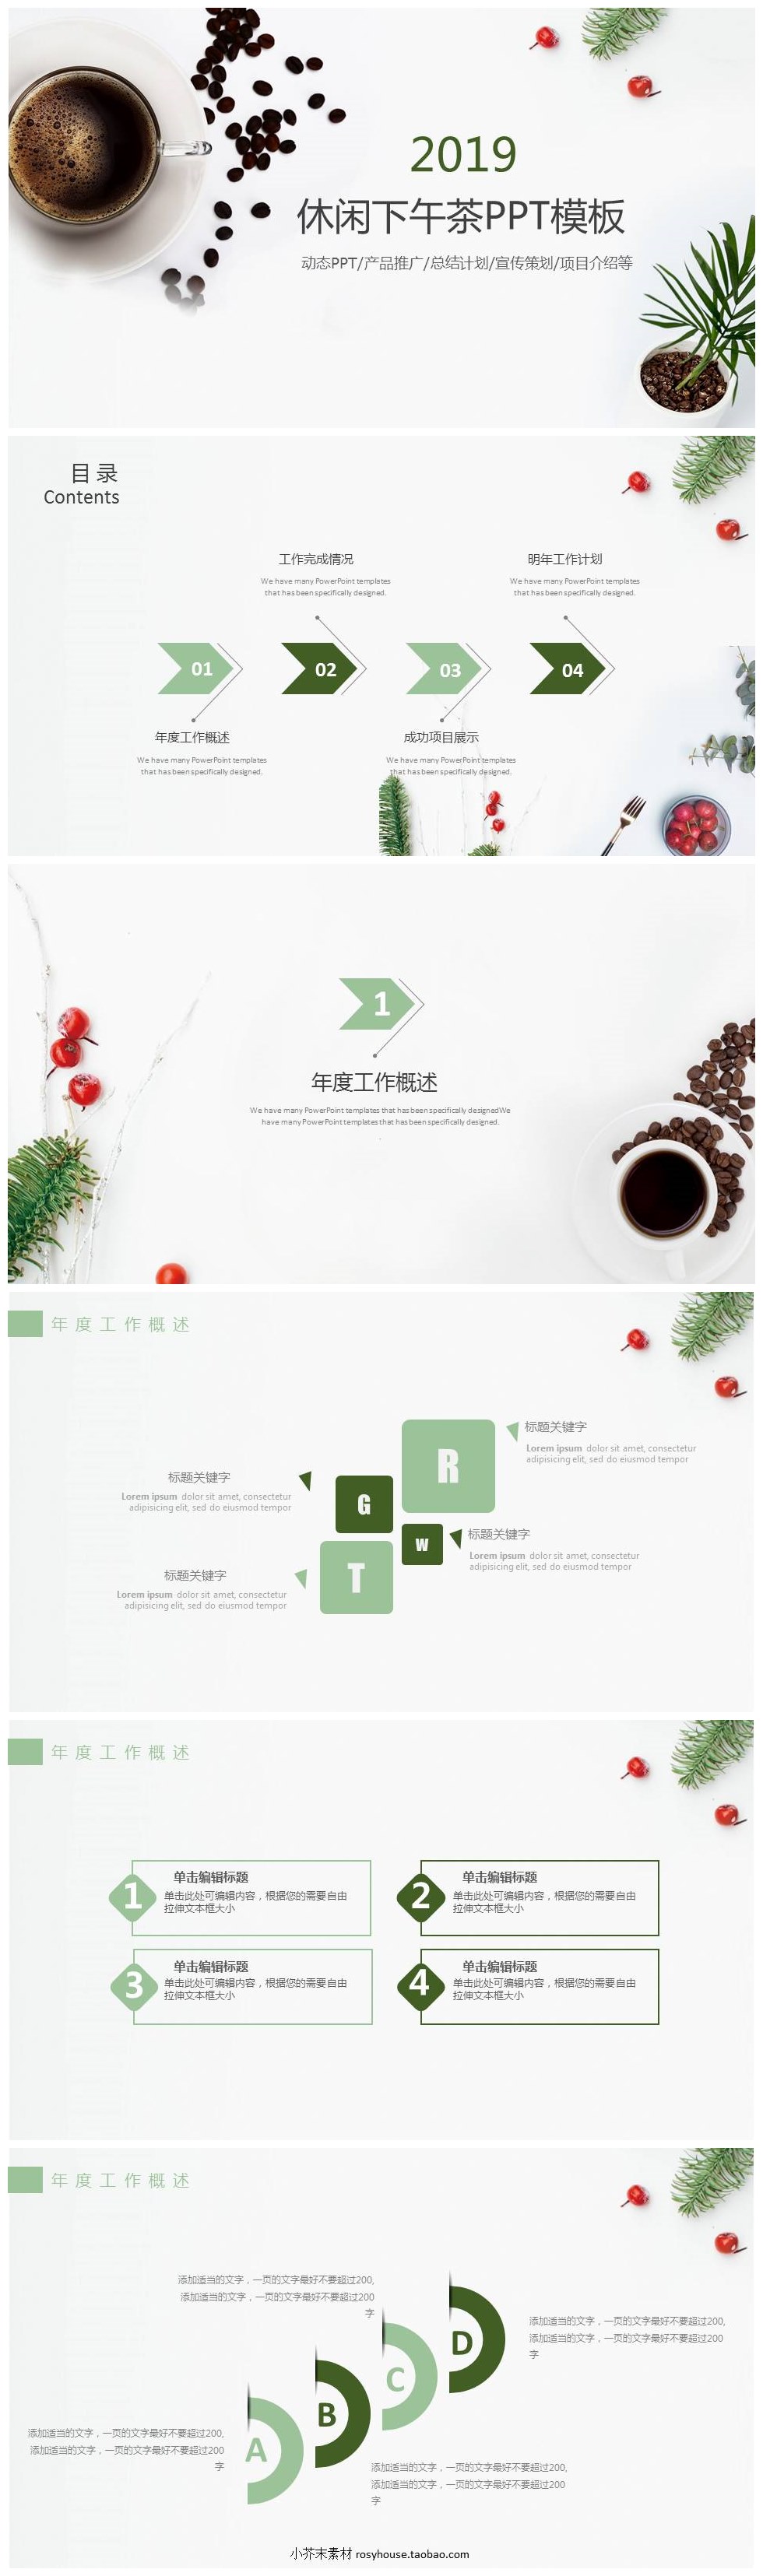 清新素雅休闲下午茶产品宣传推广PPT模板-聚给网